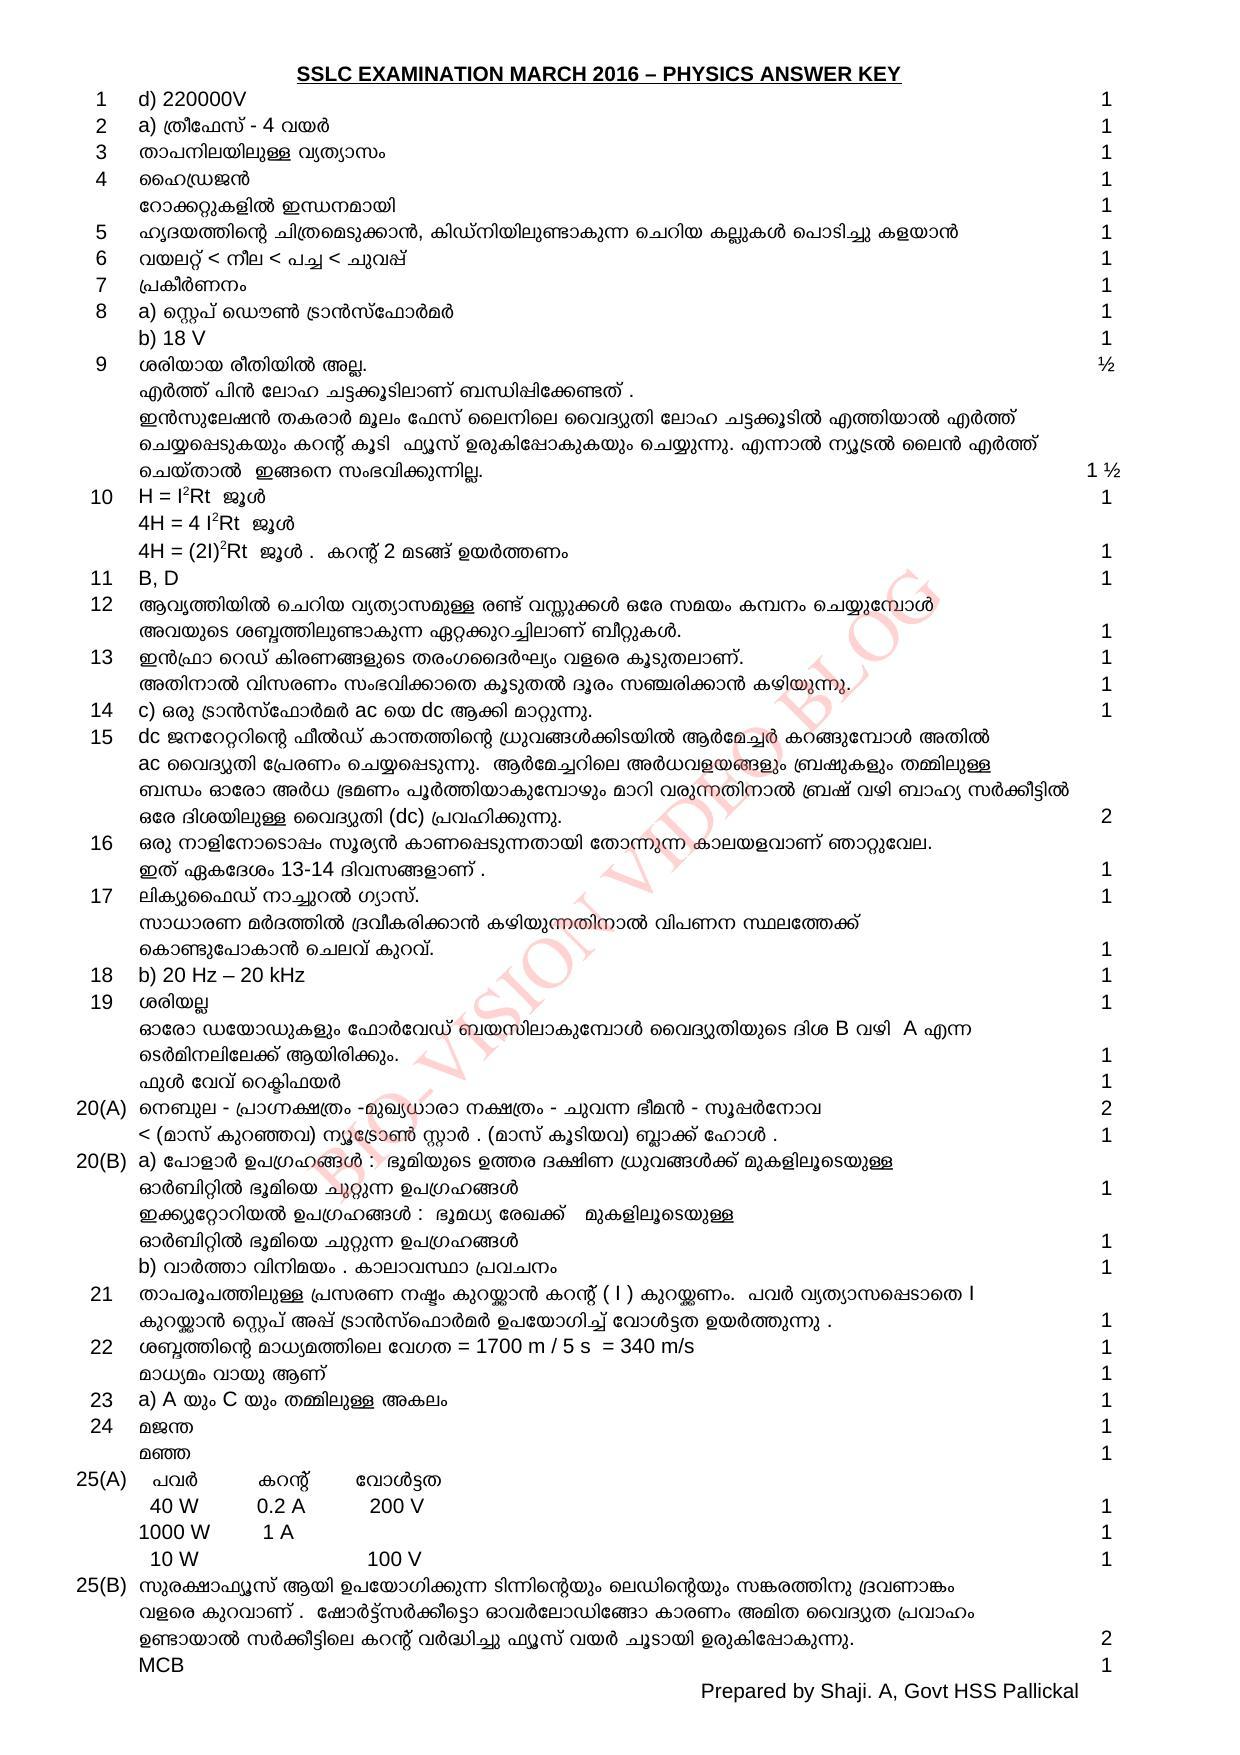 Kerala SSLC 2016 Physics Answer key - Page 1